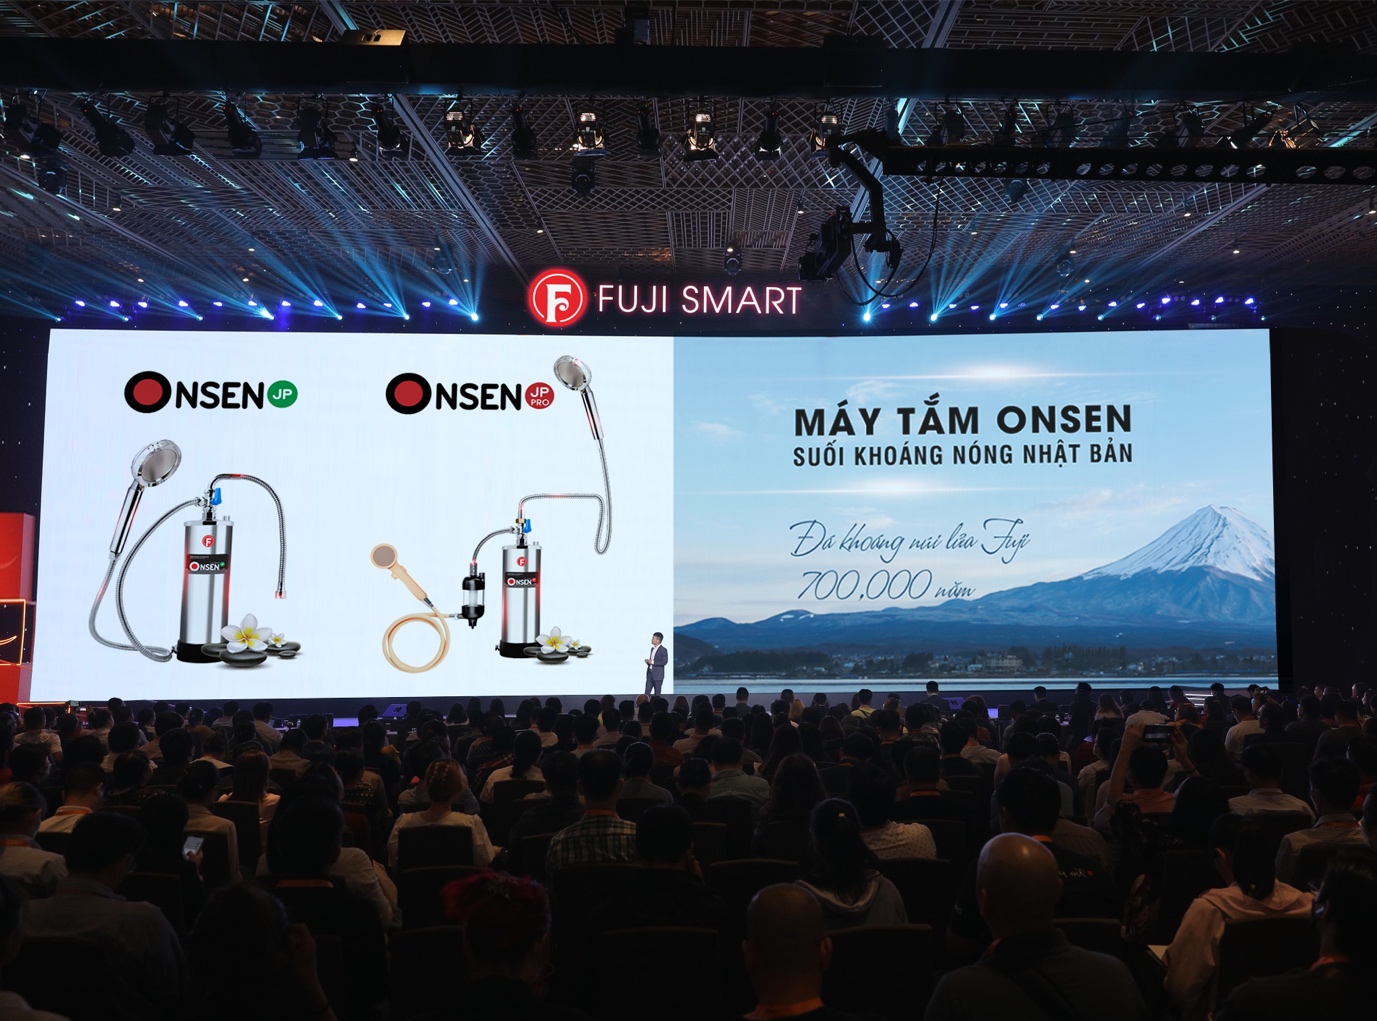 Lễ ra mắt máy tắm onsen thương hiệu Fuji Smart ngày 10-12-2022